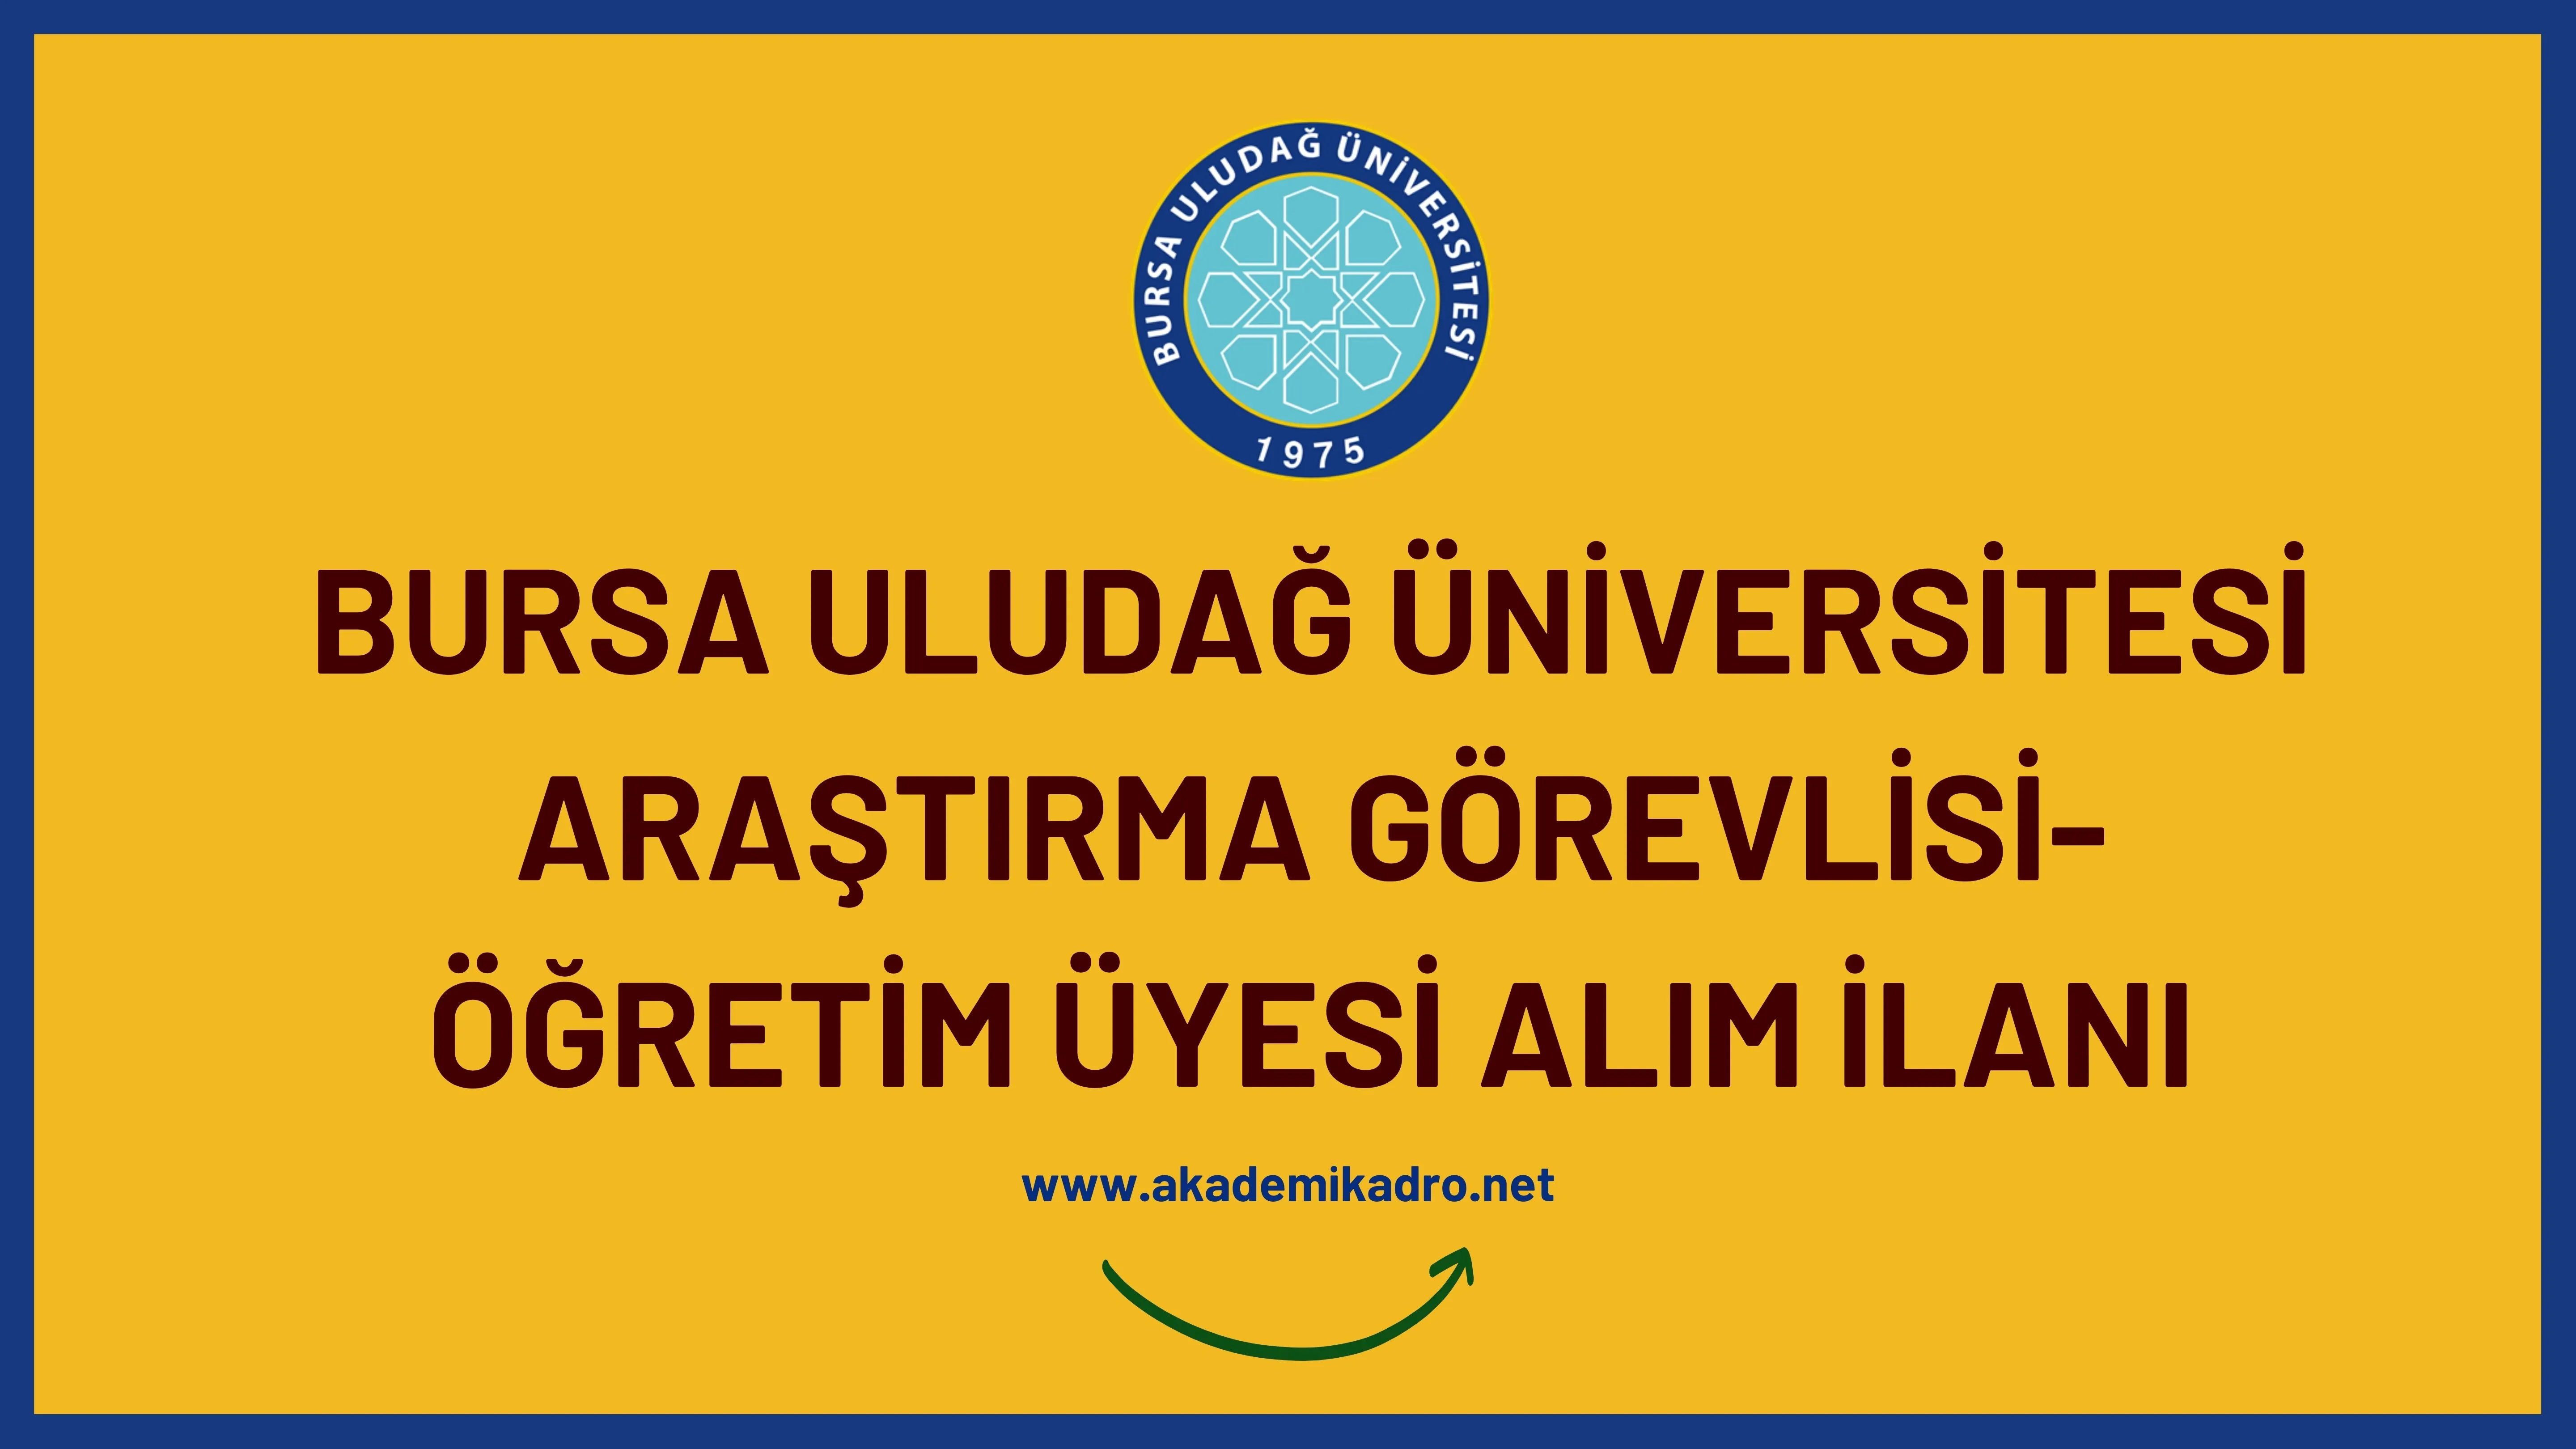 Bursa Uludağ Üniversitesi 28 Araştırma görevlisi ve 38 Öğretim üyesi alacak.